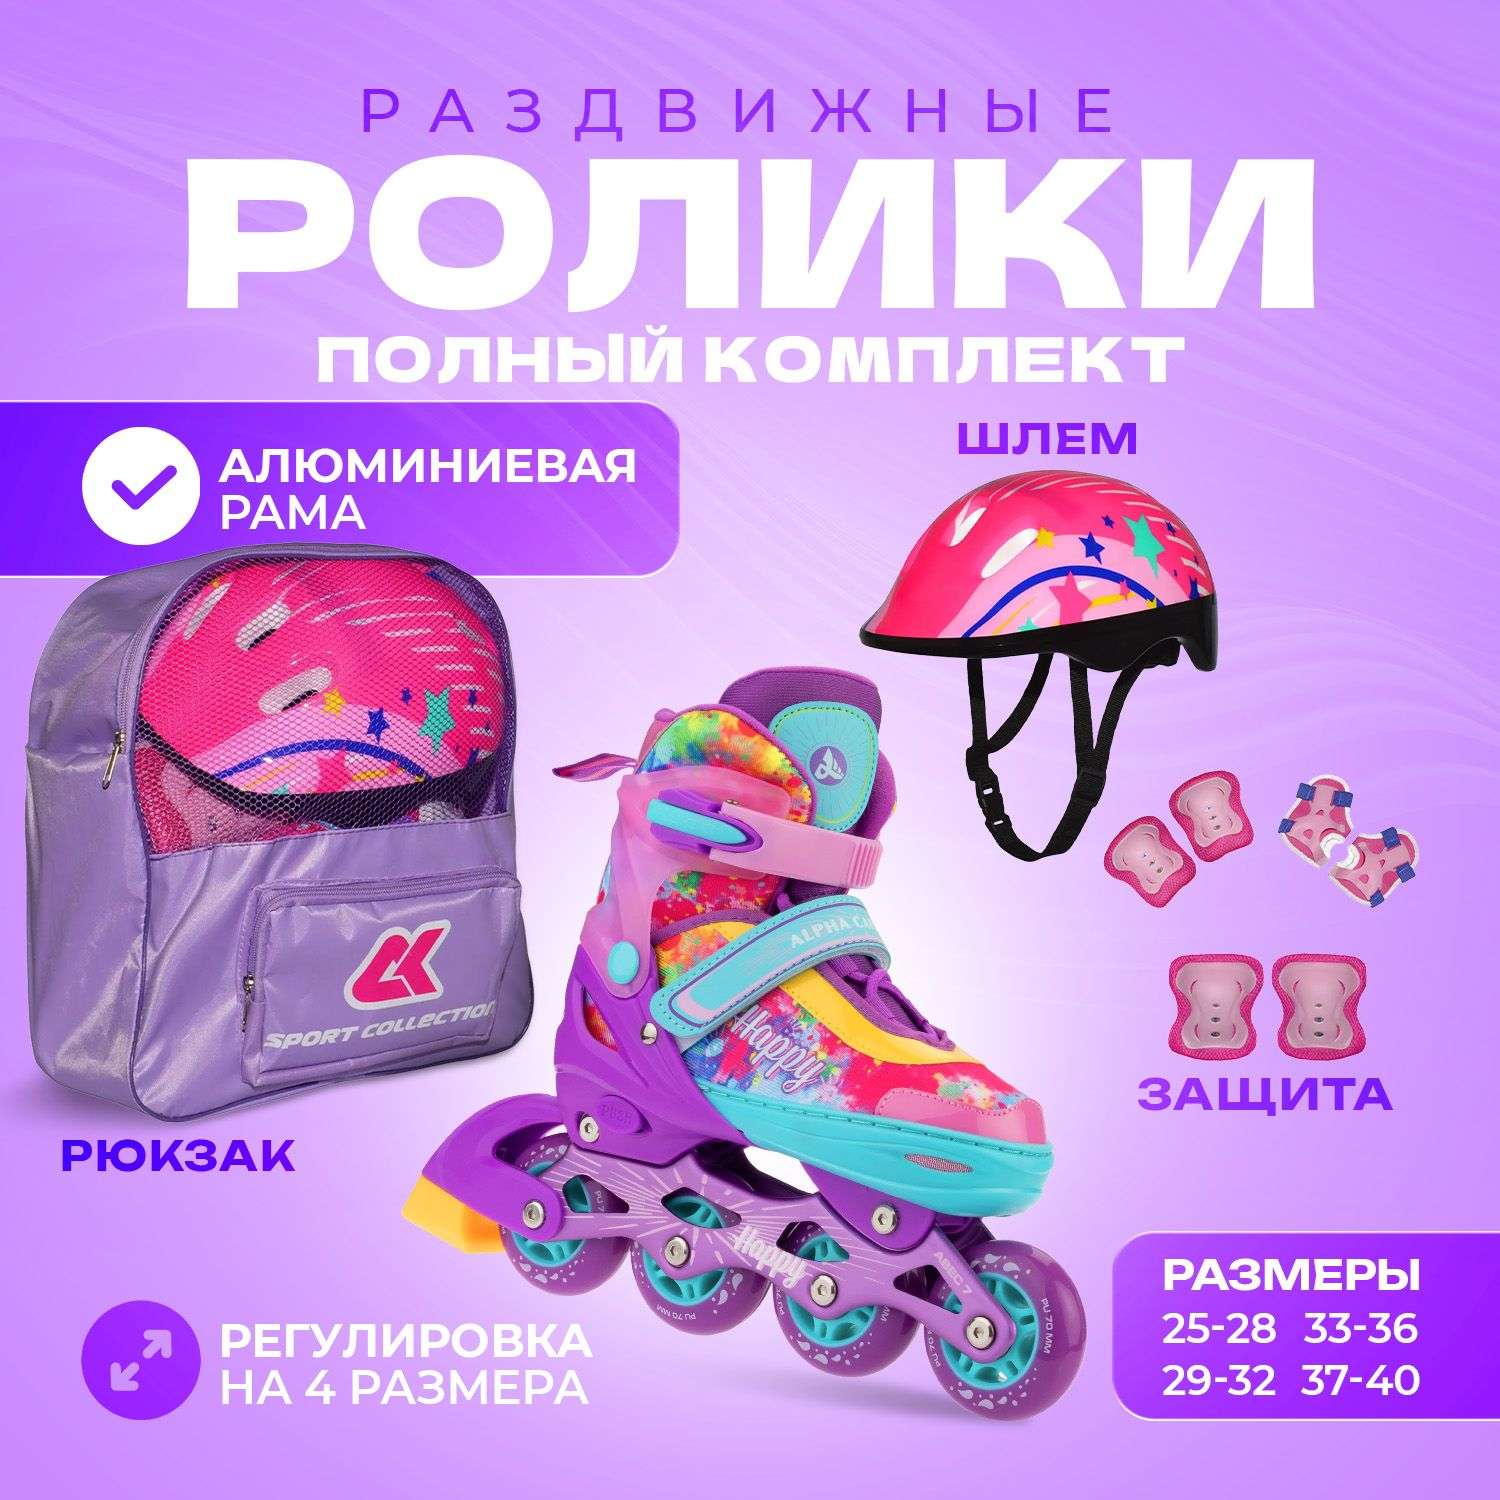 Набор роликовые коньки Sport Collection раздвижные Set Happy Violet шлем и набор защиты в сумке размер M 33-36 - фото 1